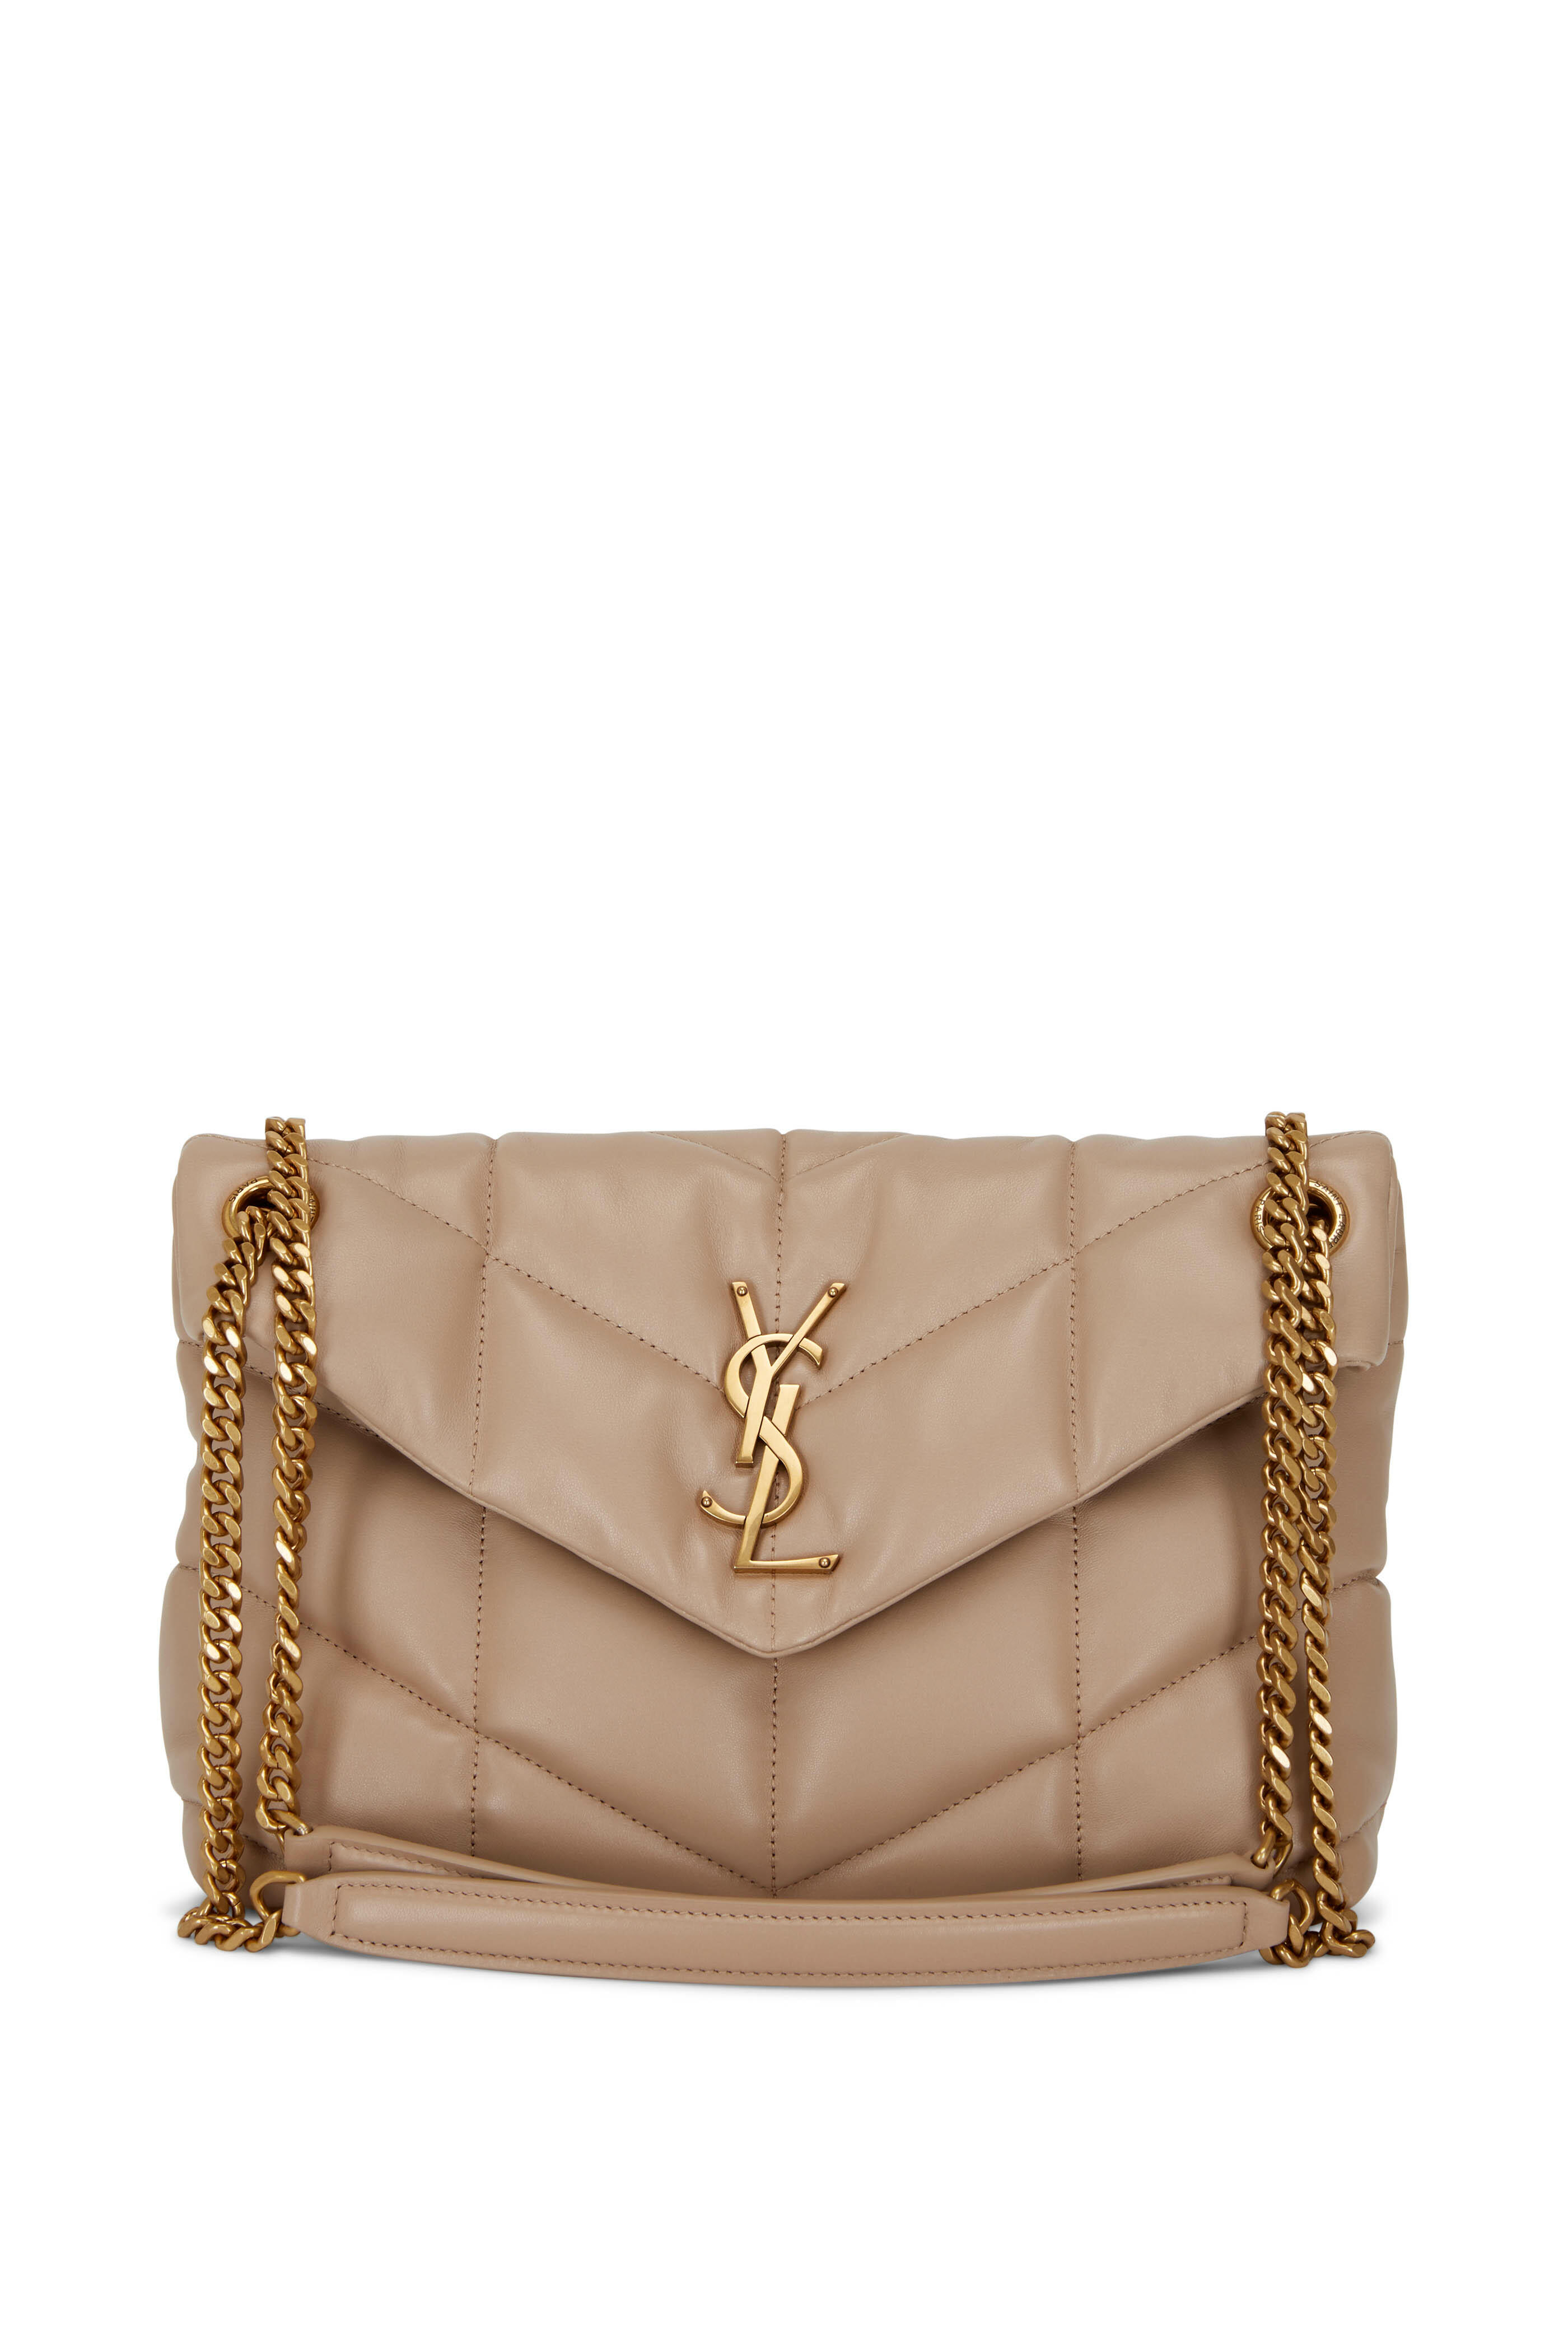 Yves Saint Laurent YSL - Loulou Small bag on Designer Wardrobe